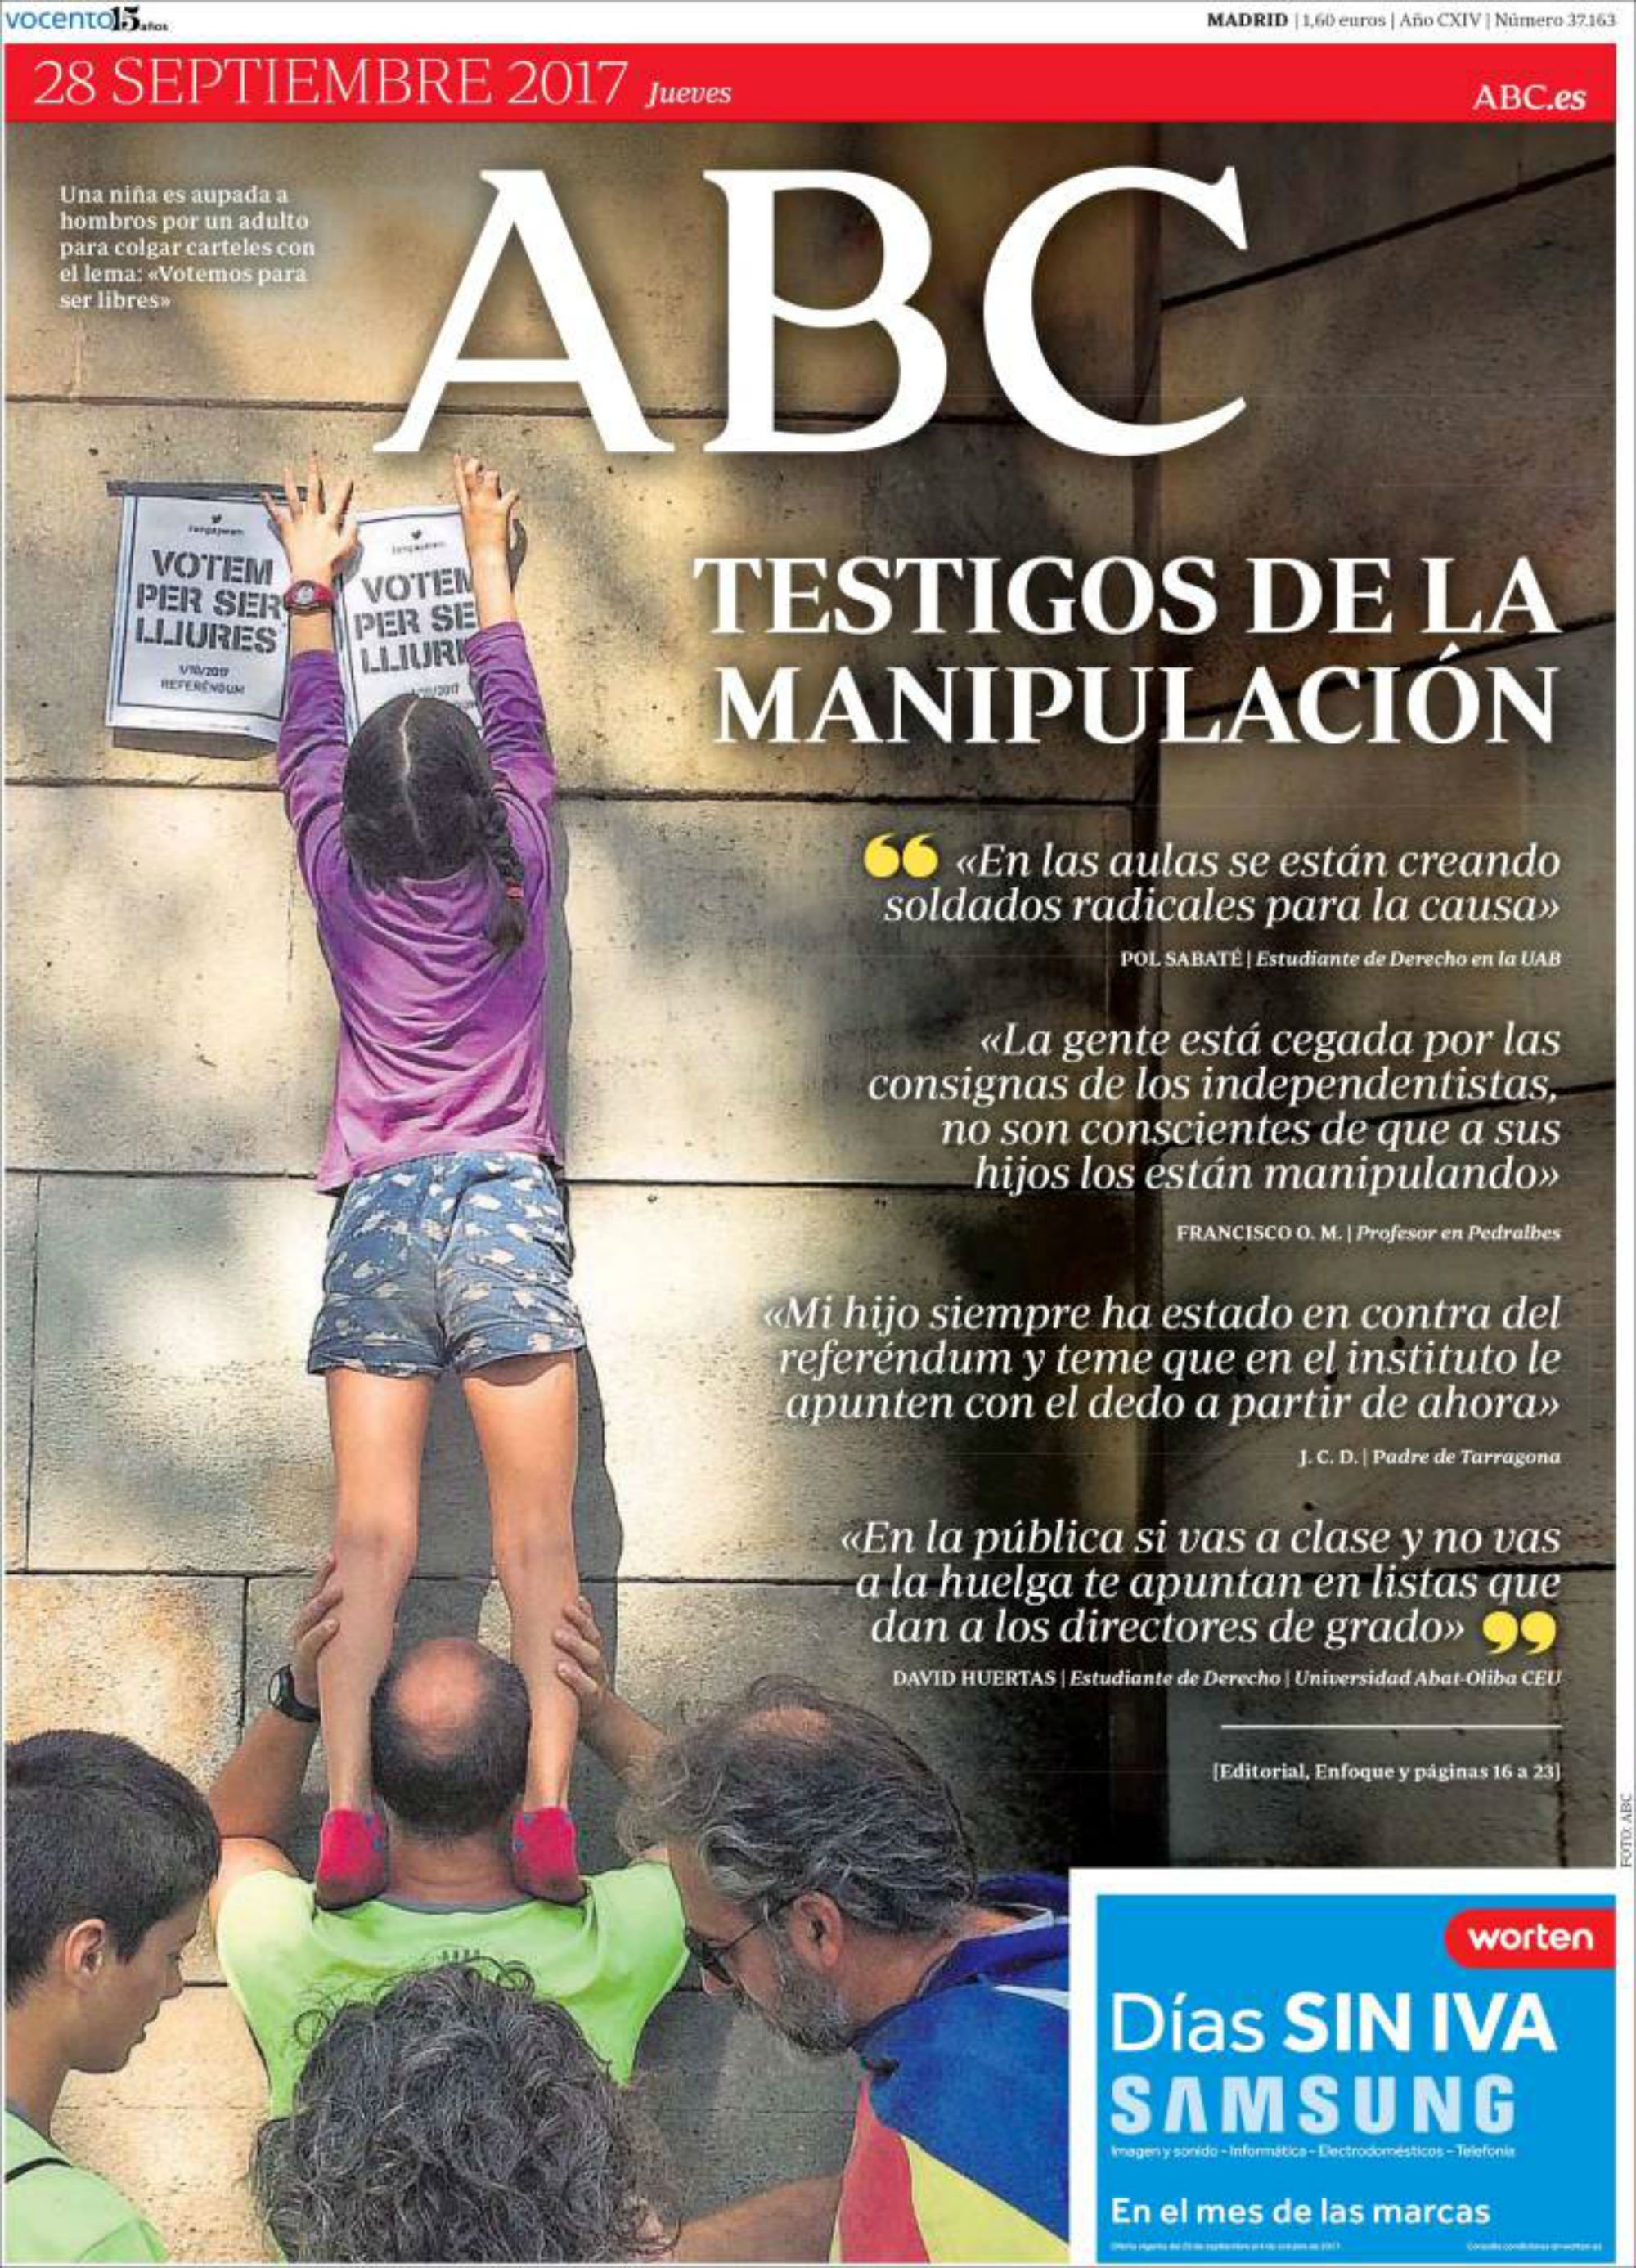 'ABC' parla de "manipulació als joves" a la seva portada